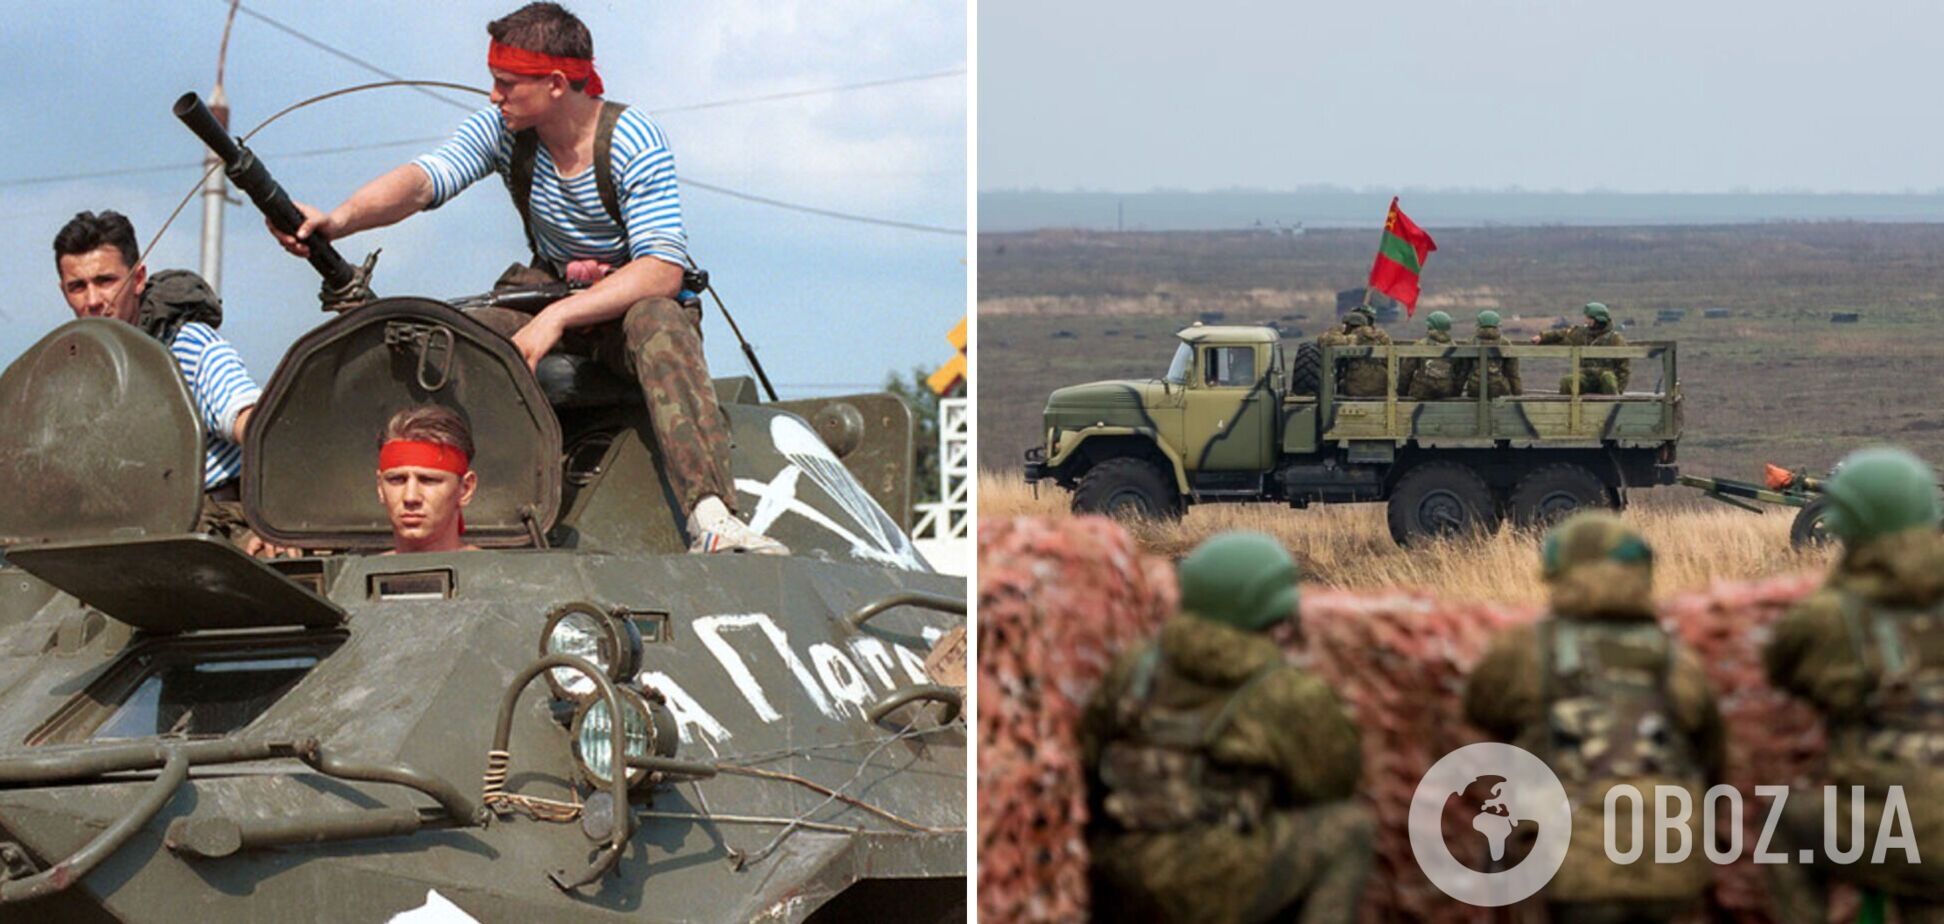 Підрозділи з Придністров'я виявилися не готовими до війни проти України: ФСБ провела перевірку